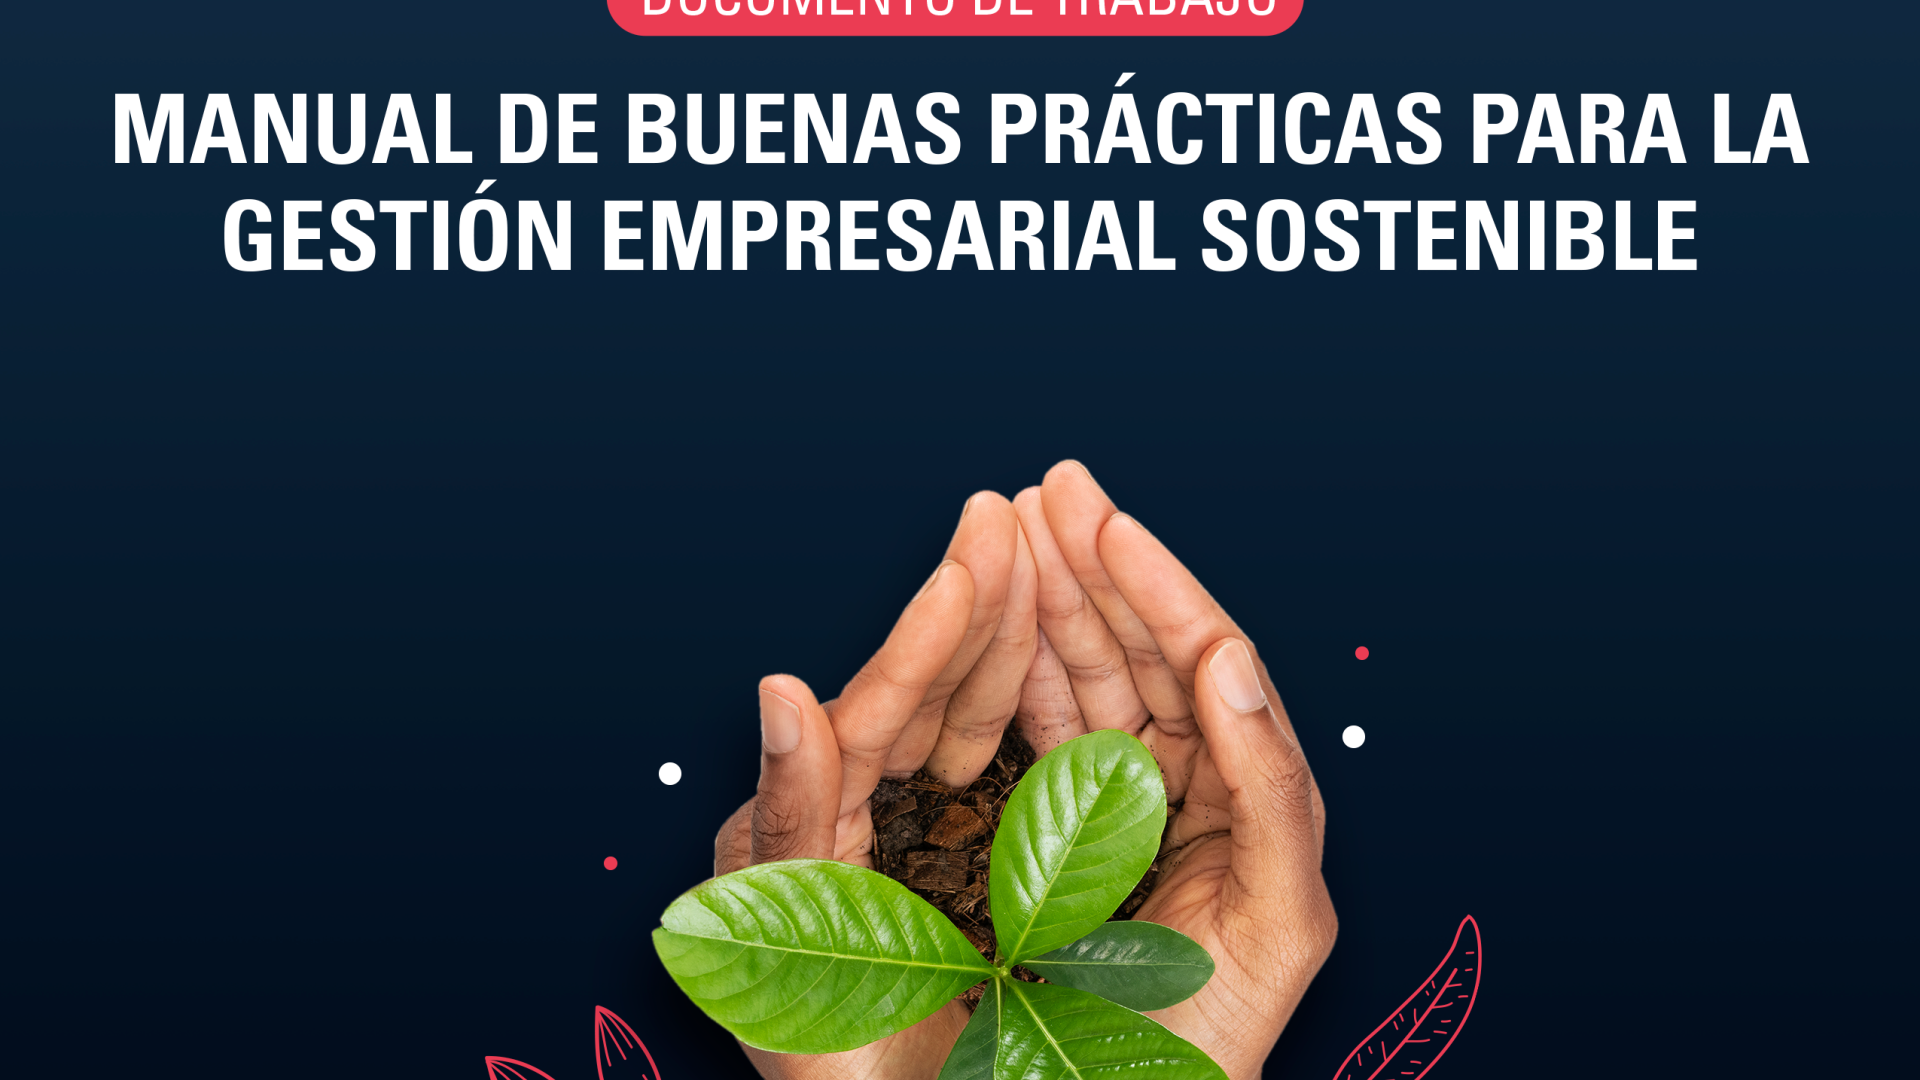 Manual de buenas prácticas para la gestión empresarial sostenible |  Programa De Las Naciones Unidas Para El Desarrollo